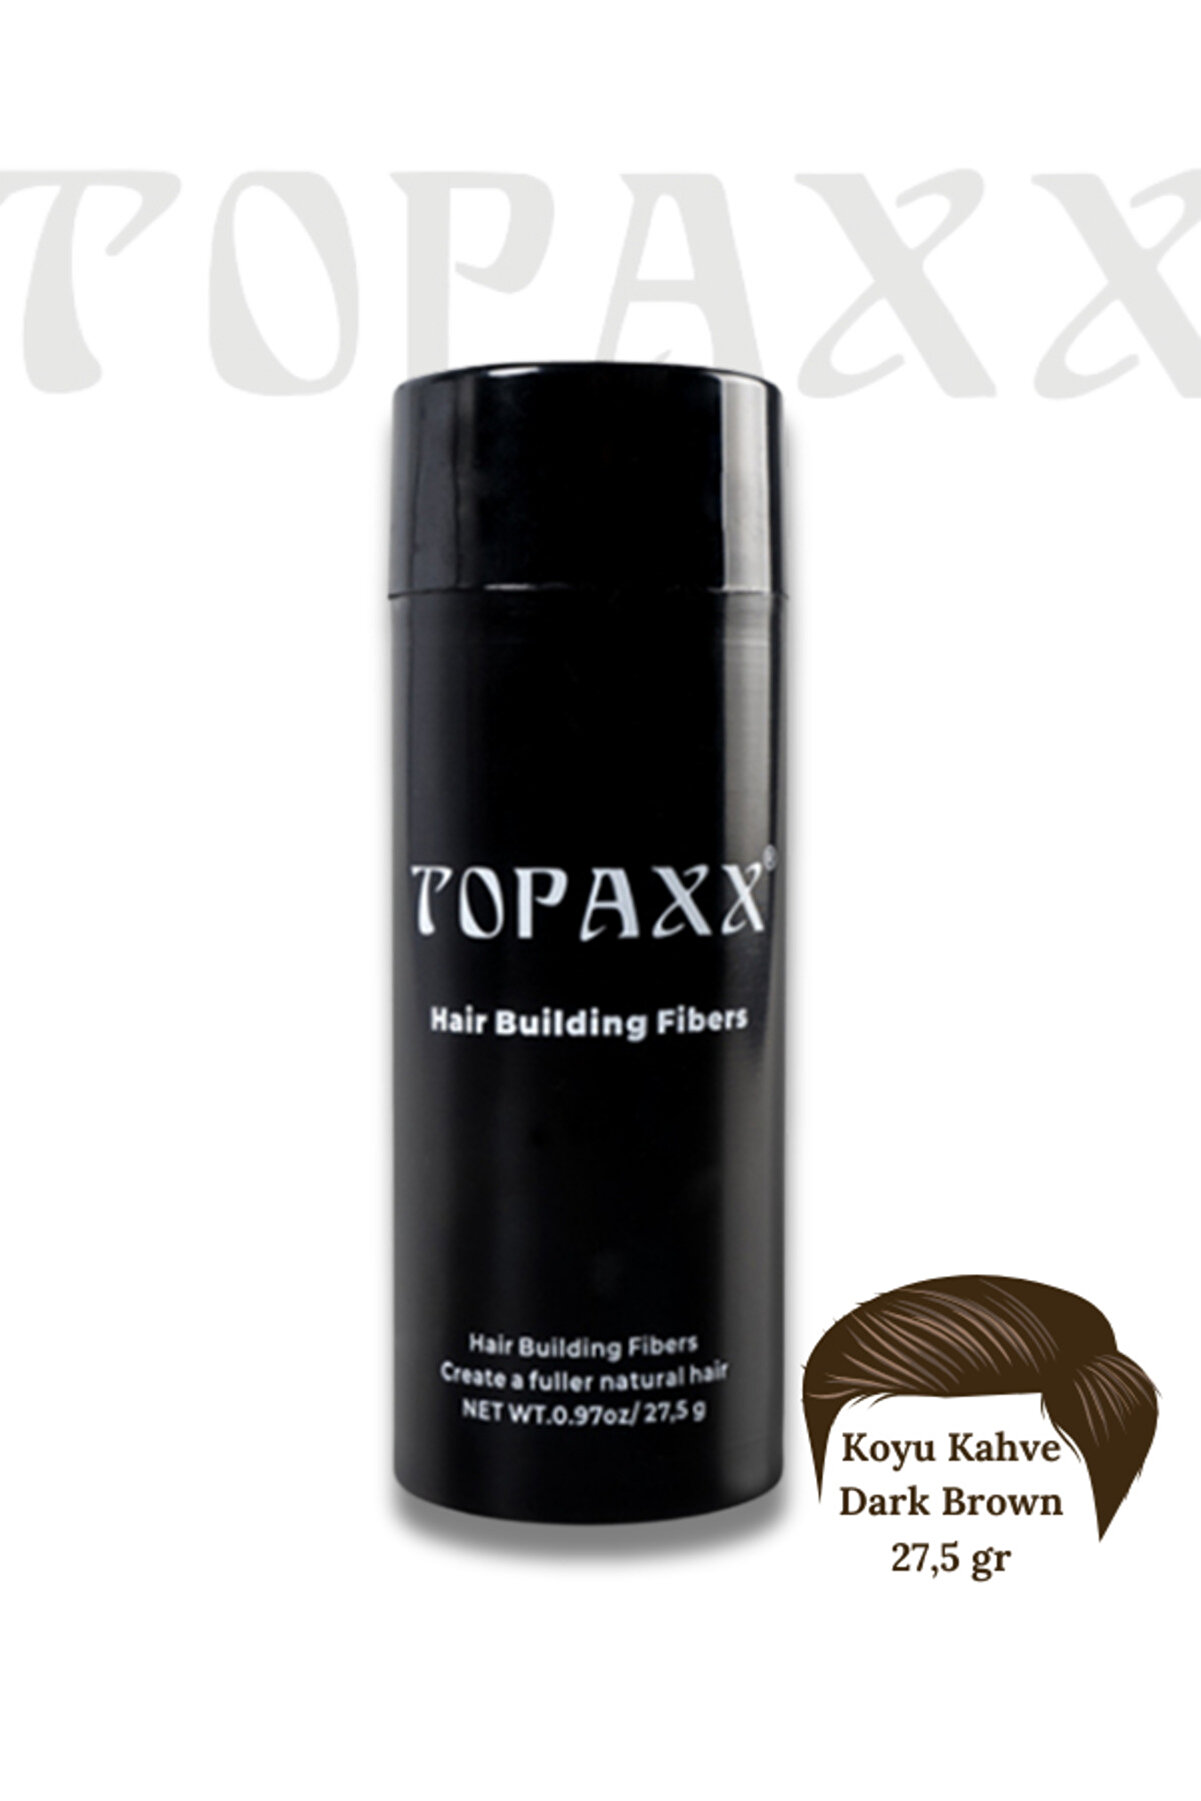 Topaxx Koyu Kahve/dark Brown Saç Dolgunlaştırıcı Fiber Topik Tozu 27,5gr